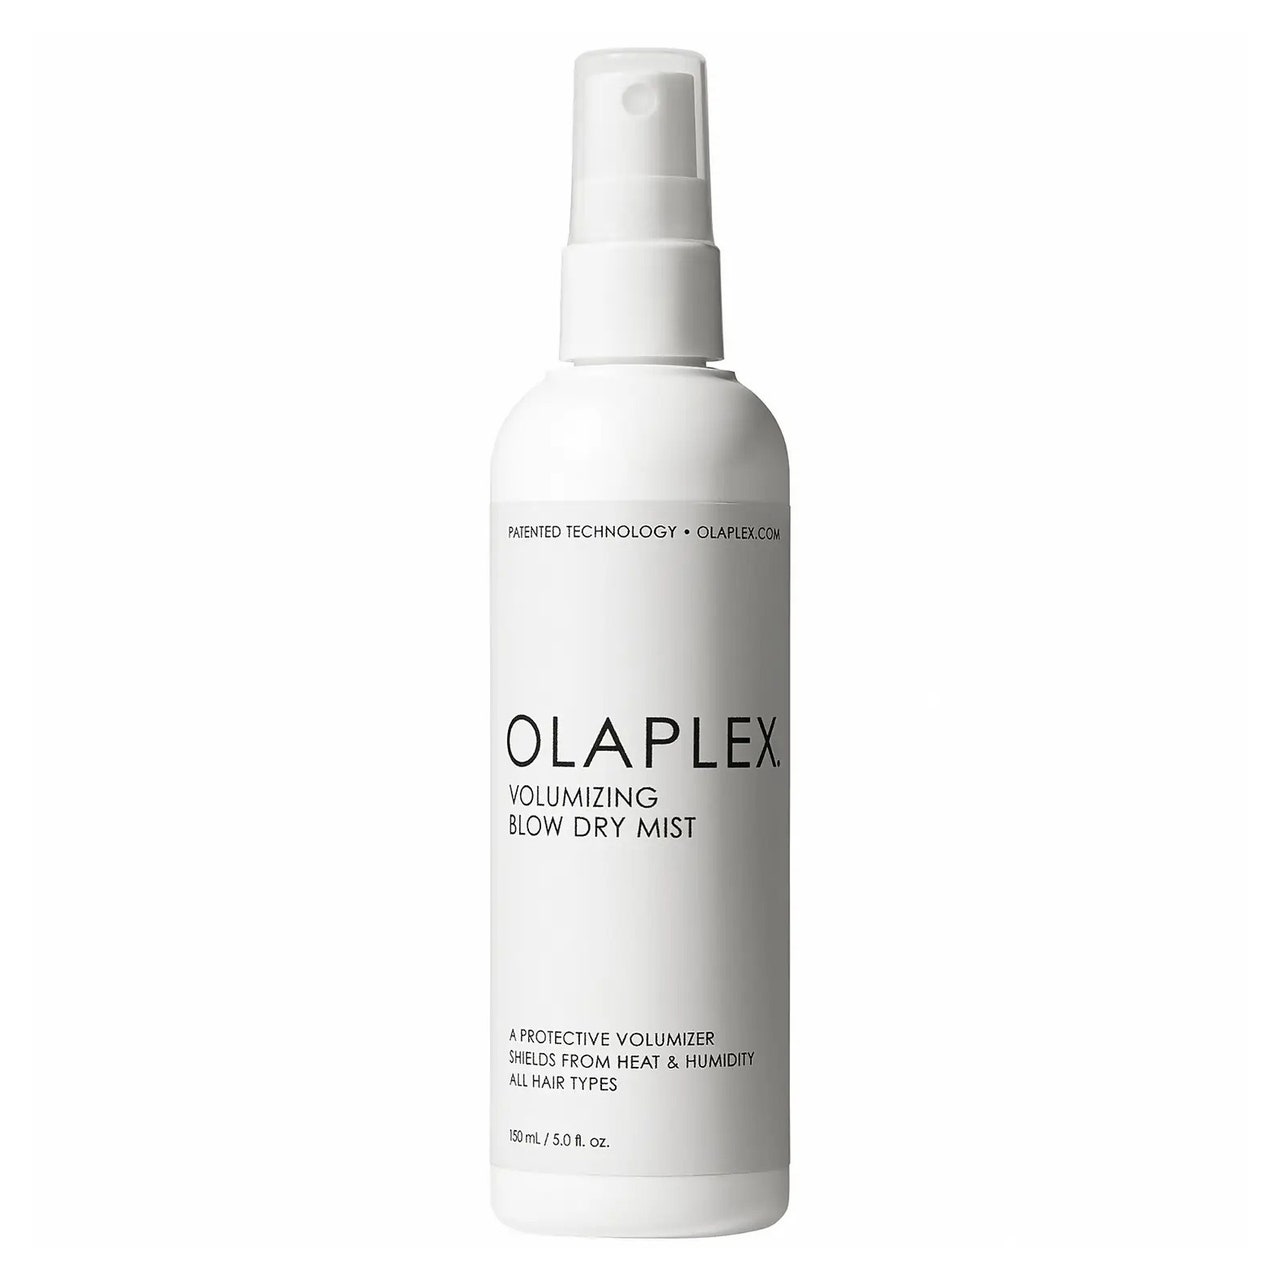 Olaplex Volumizing Blow Dry Mist weiße Sprühflasche auf weißem Hintergrund